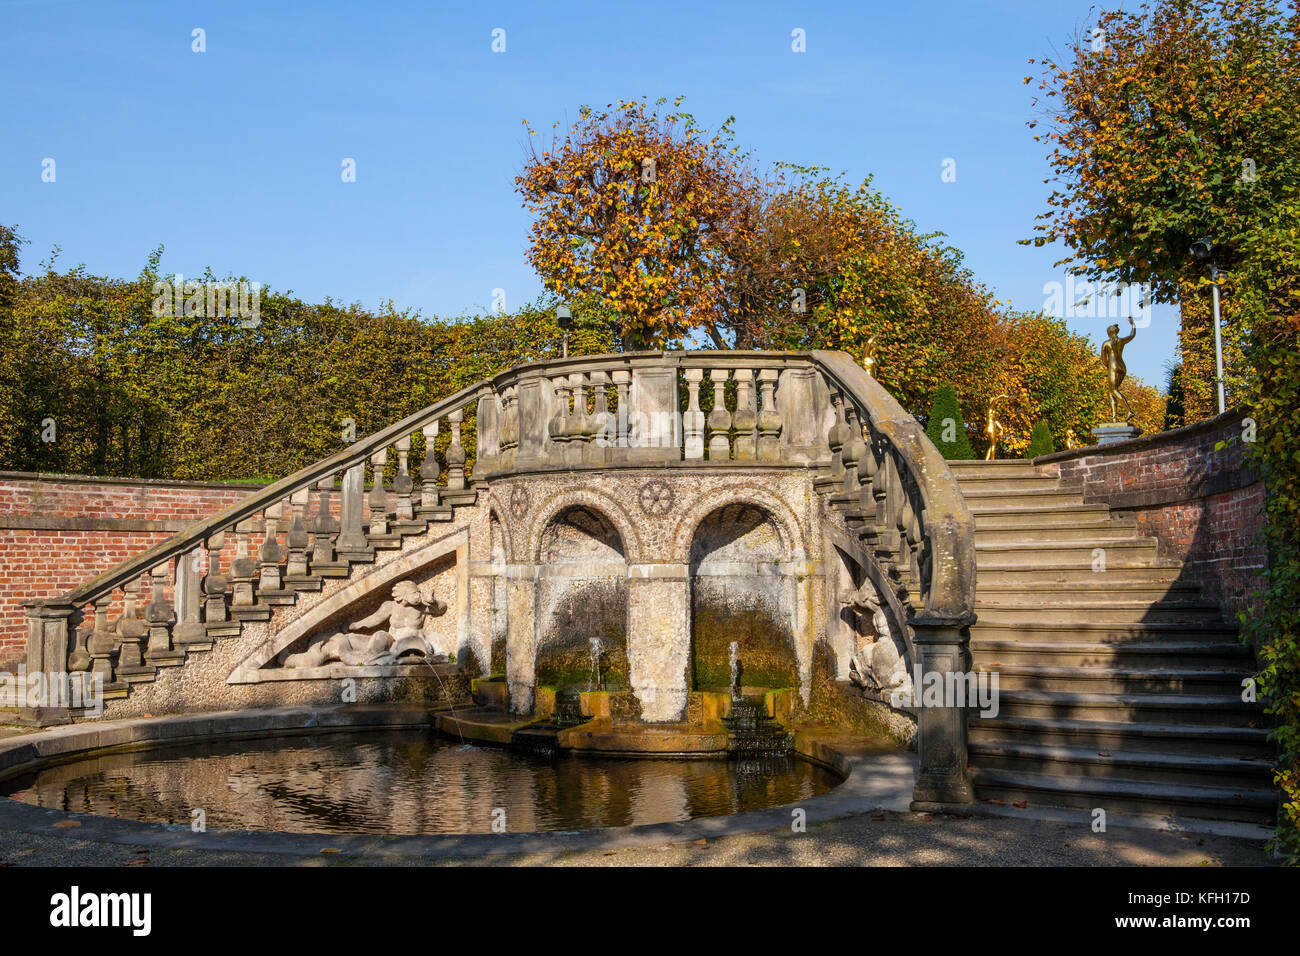 Hannover, Deutschland - 19. Oktober 2017: die Herrenhäuser Gärten in Hannover (Herrenhäuser Gärten) Stockfoto